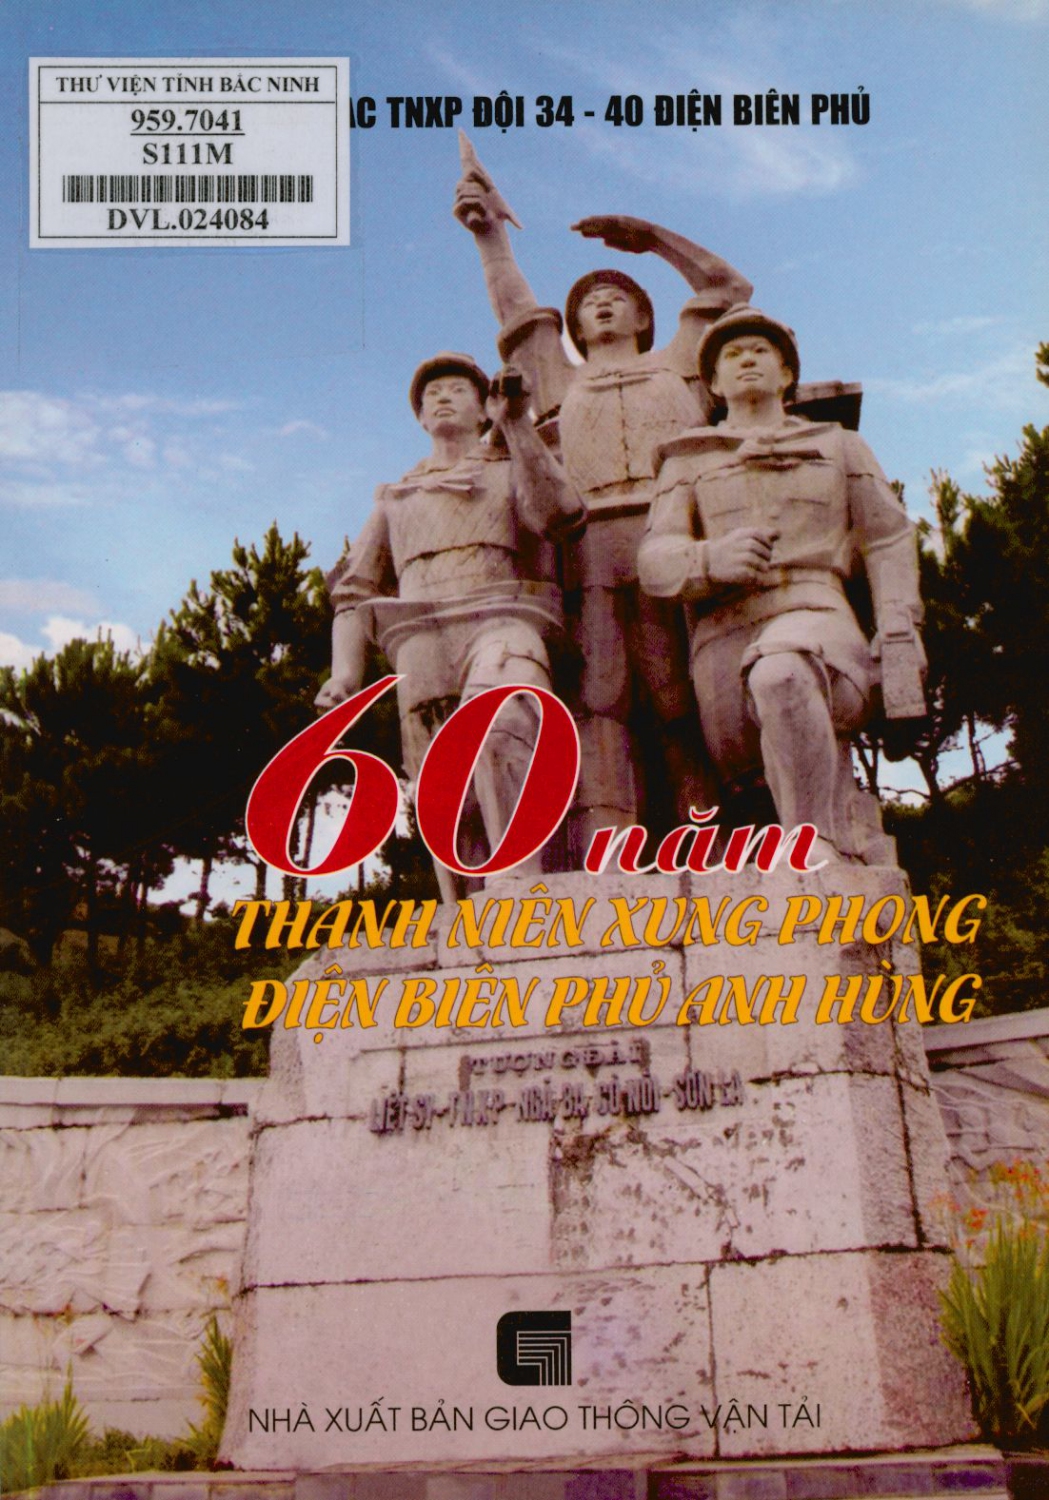 60 năm Thanh niên xung phong Điện Biên Phủ anh hùng